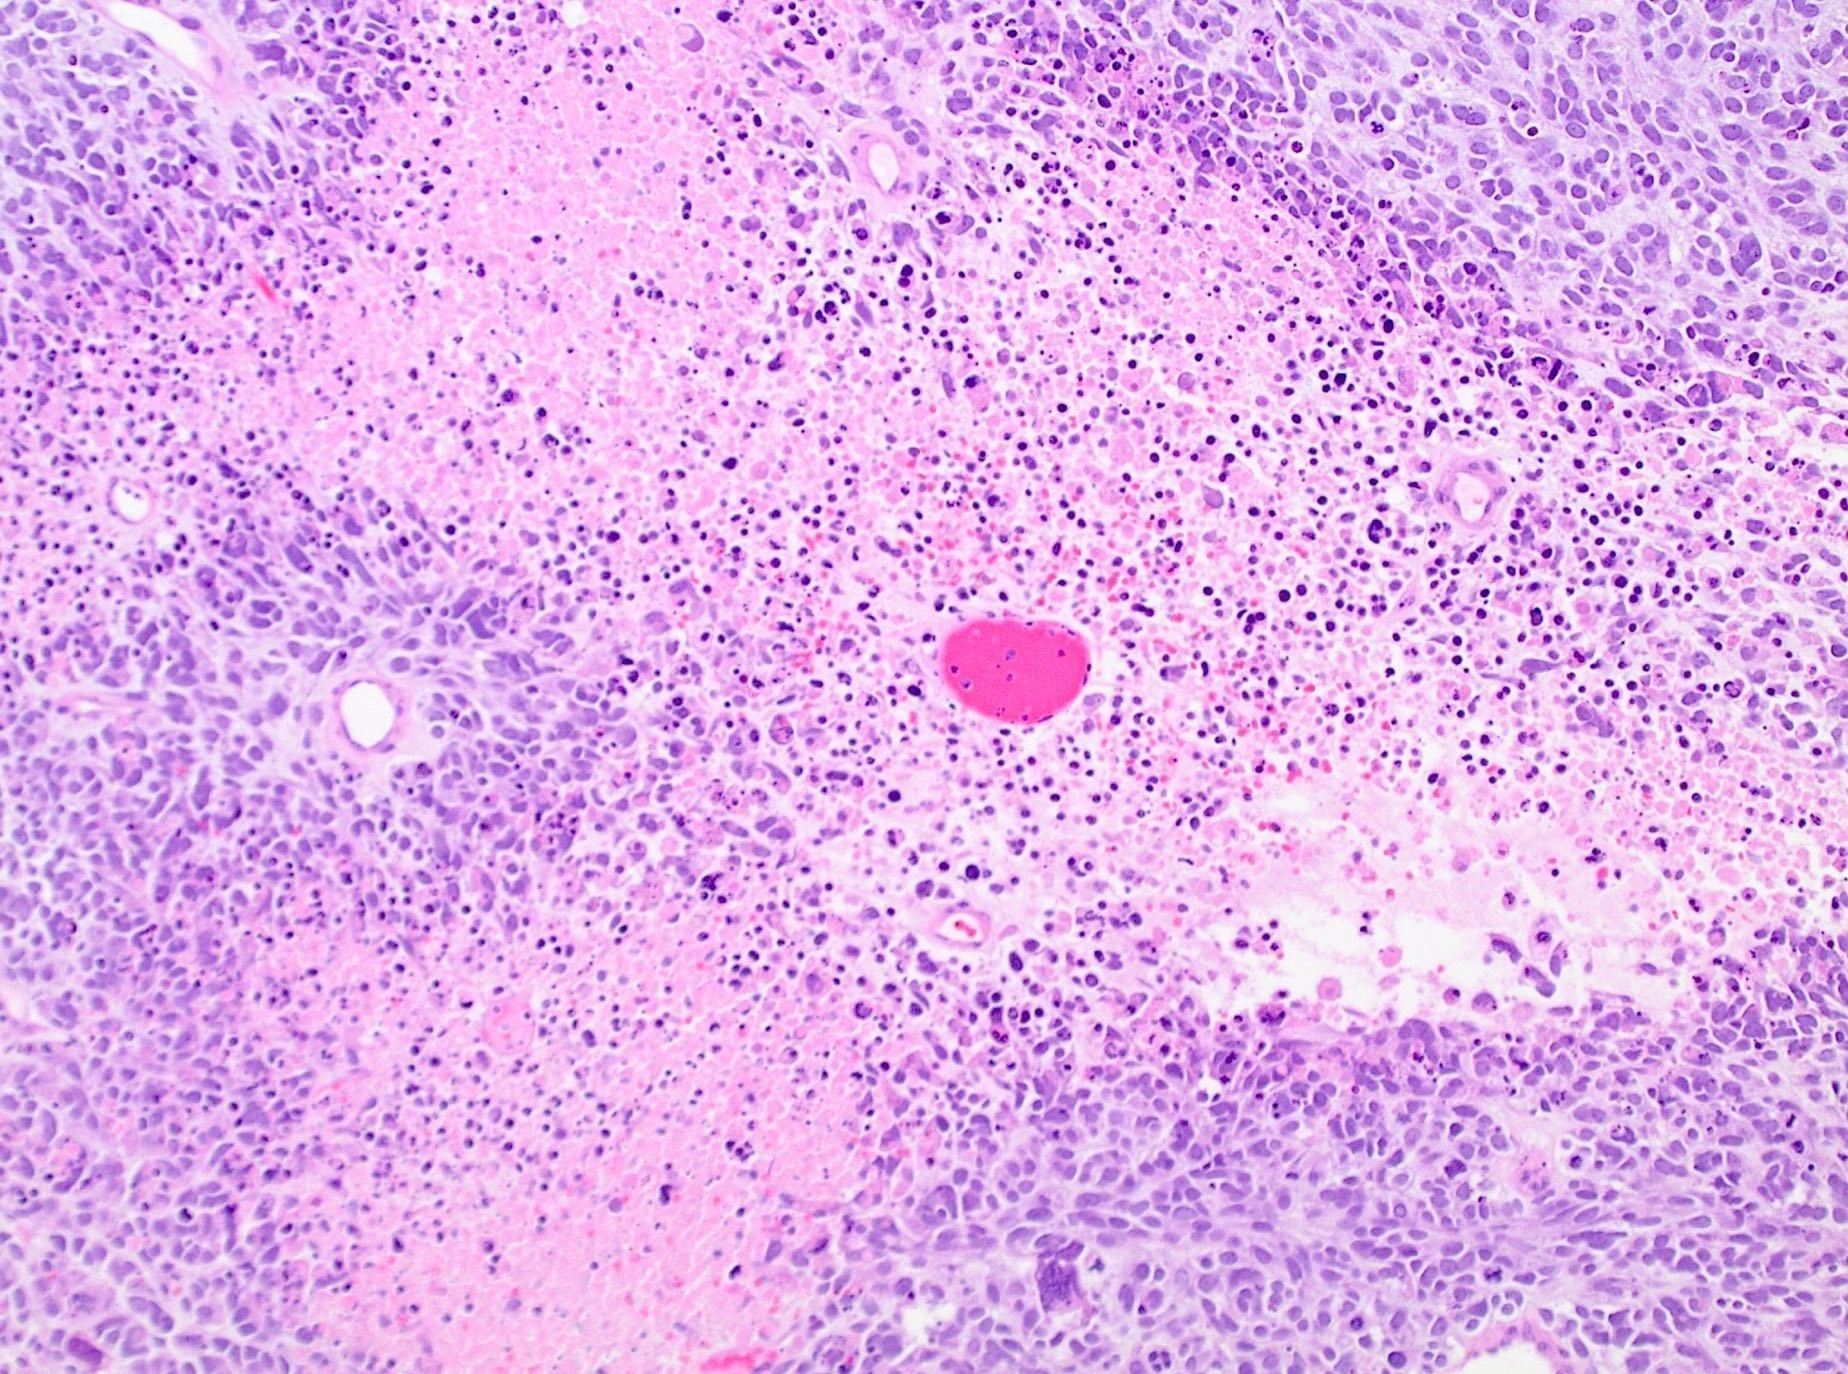 Tumor cell necrosis